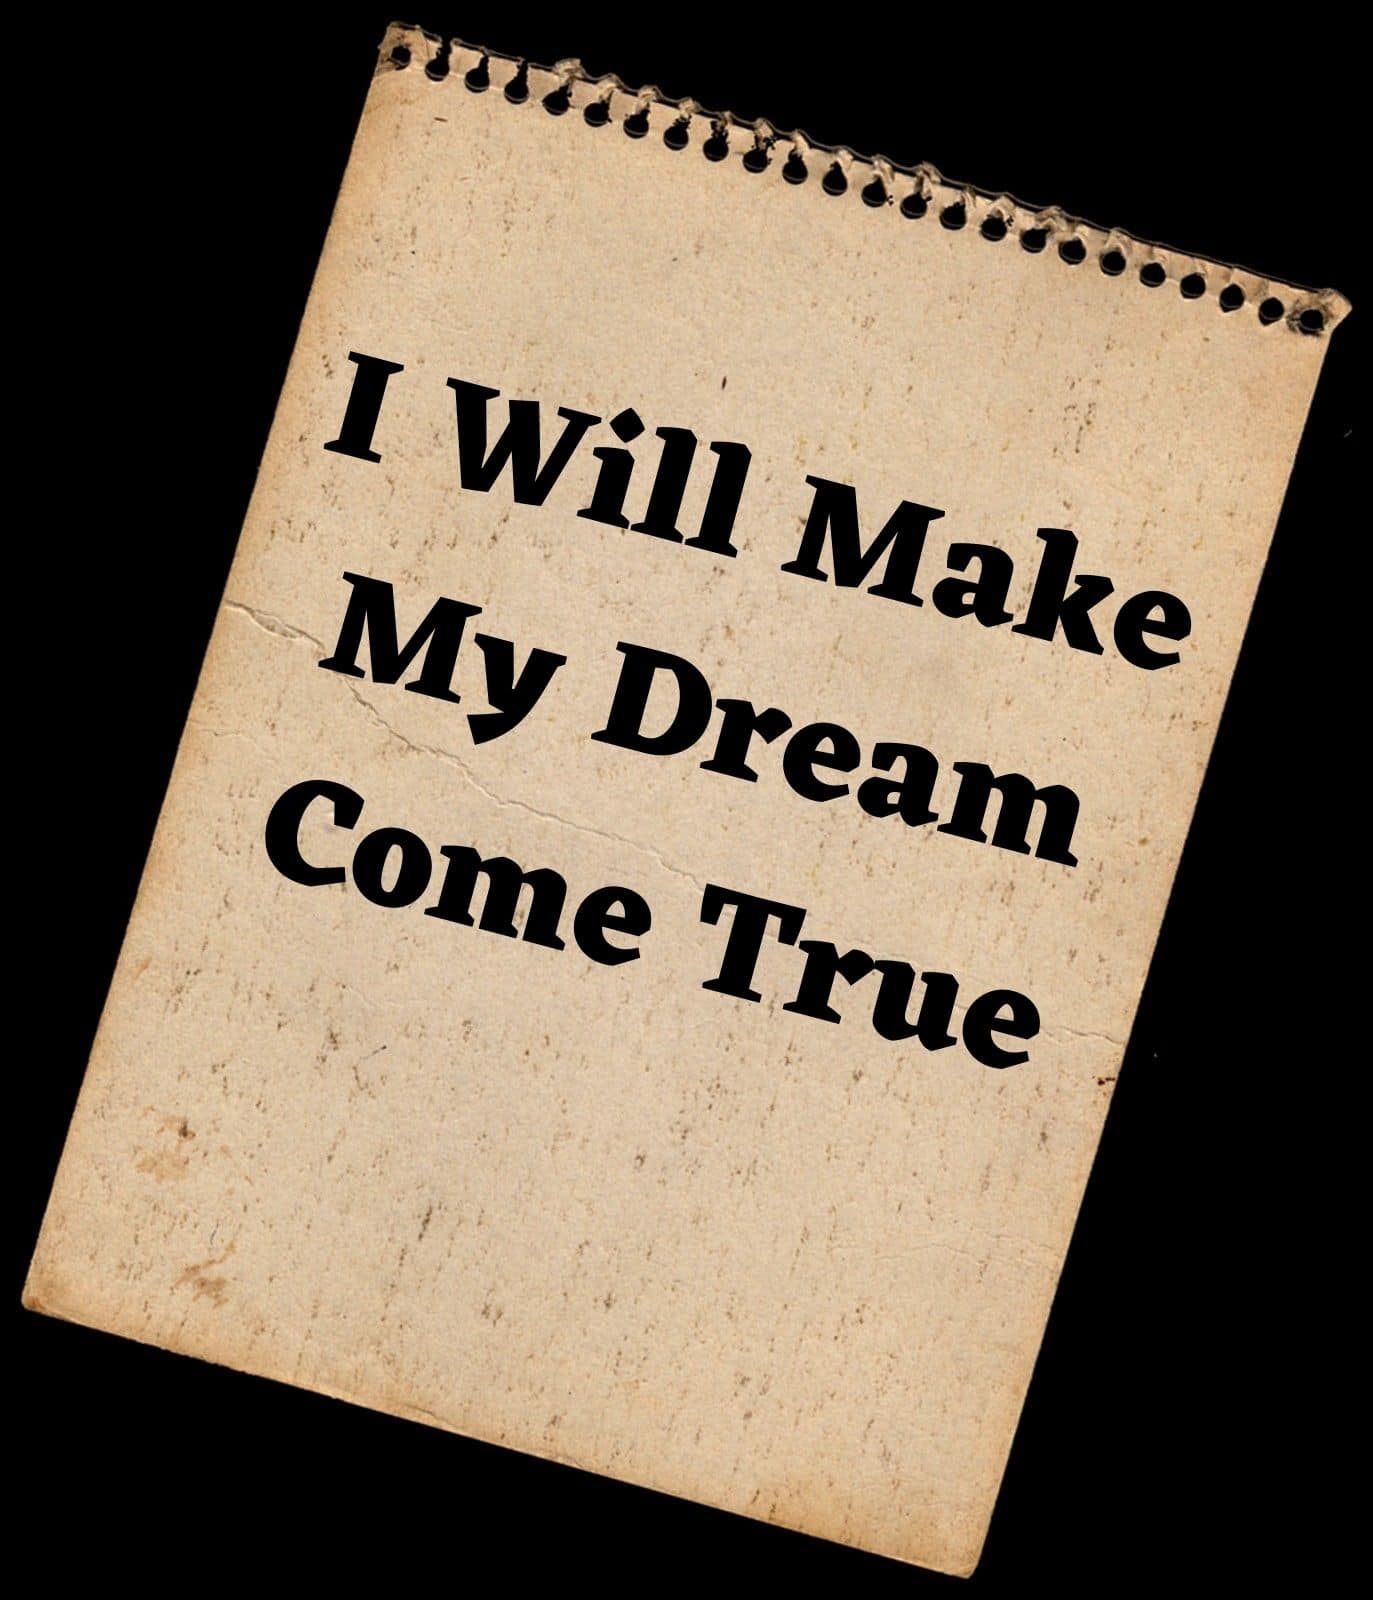 I will make my dream come true.